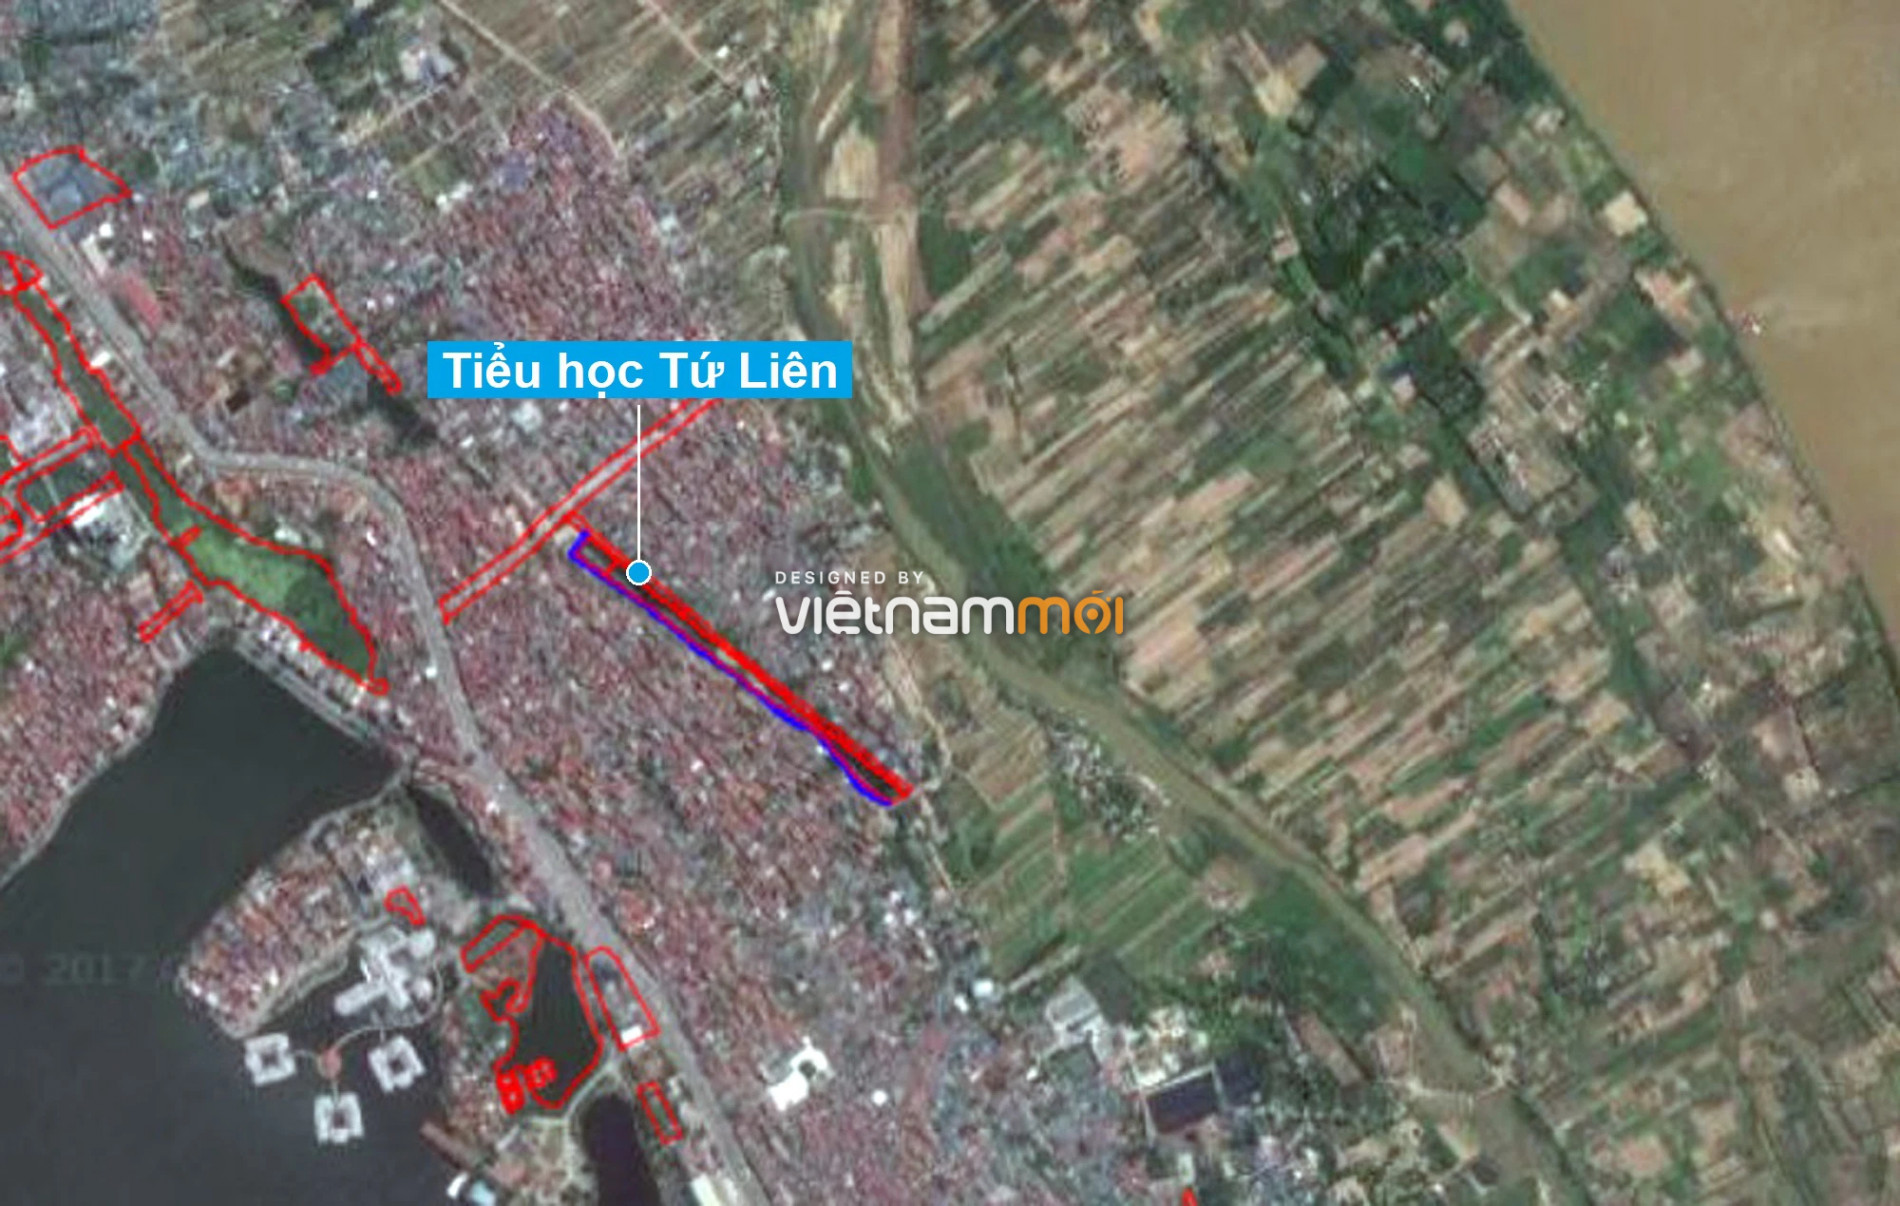 Những khu đất sắp thu hồi để mở đường ở quận Tây Hồ, Hà Nội (phần 6) - Ảnh 14.